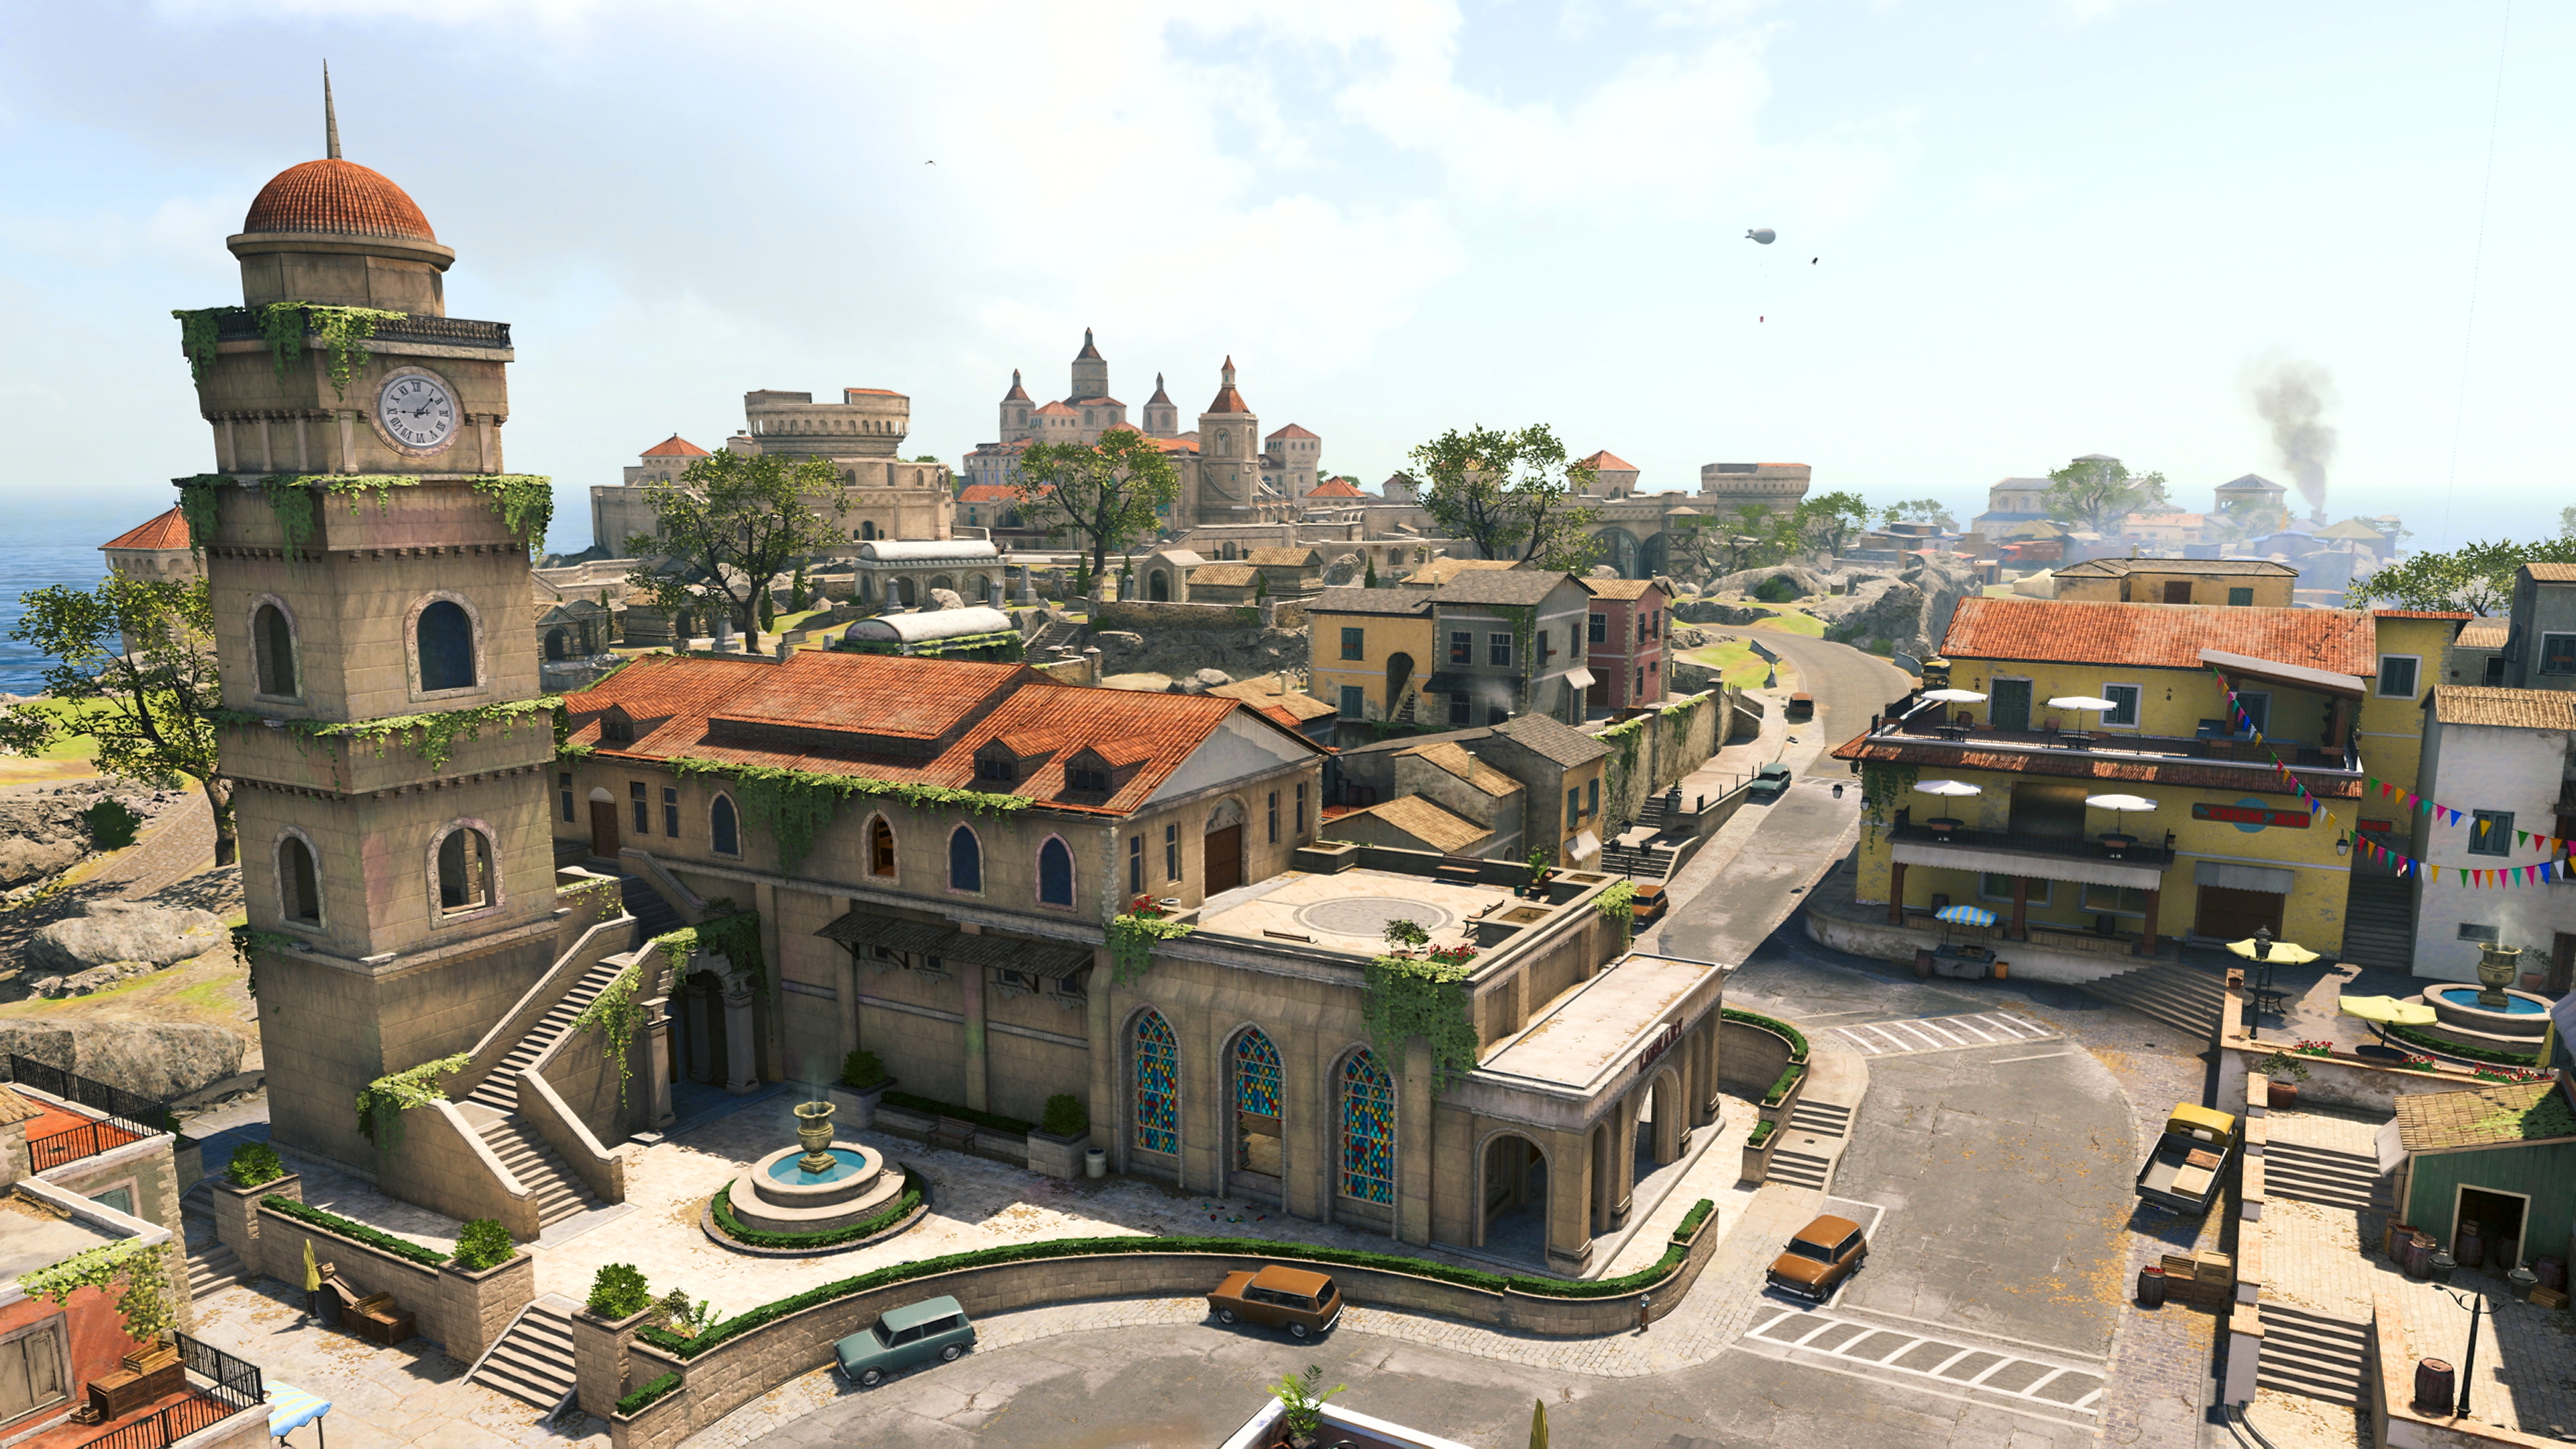 Captura de pantalla de Fortune's Keep (Torreón de la fortuna) de Call of Duty Warzone